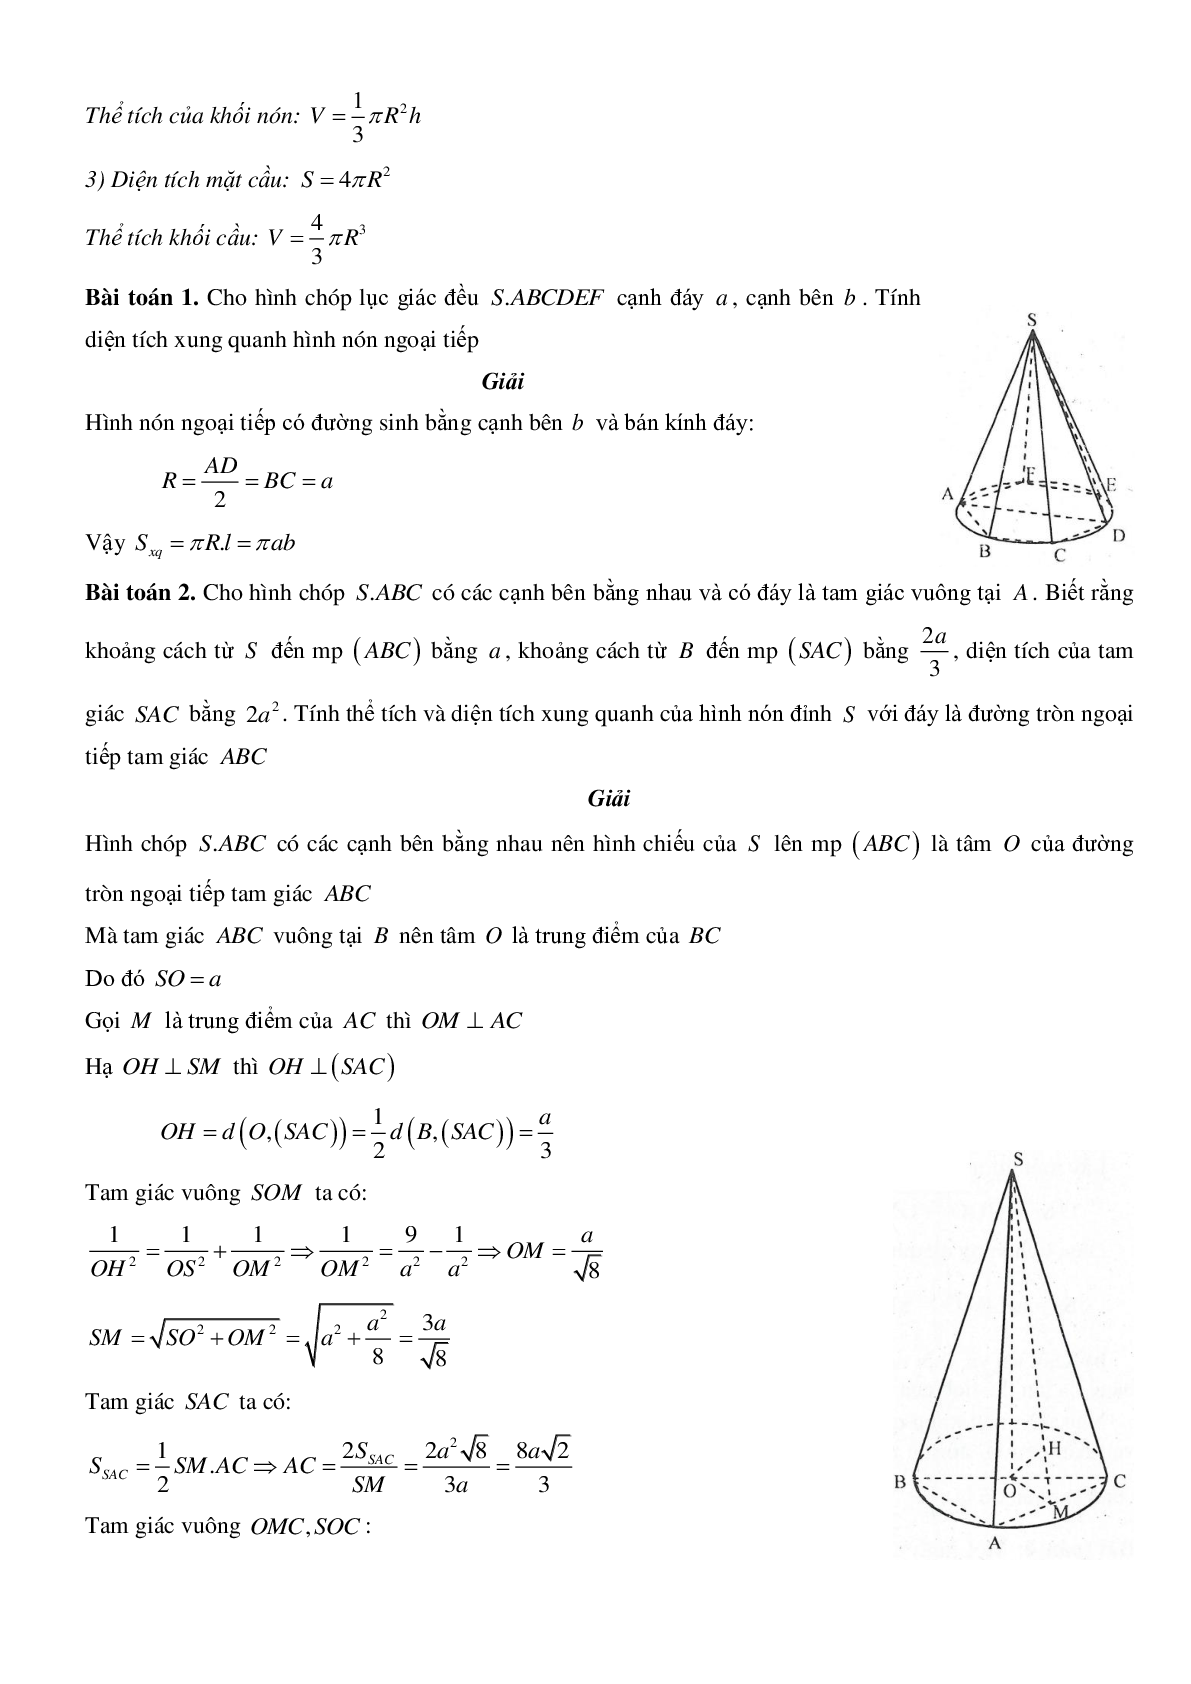 Mặt nón - Hình nón - Khối nón - Ôn thi THPT QG môn toán (trang 7)